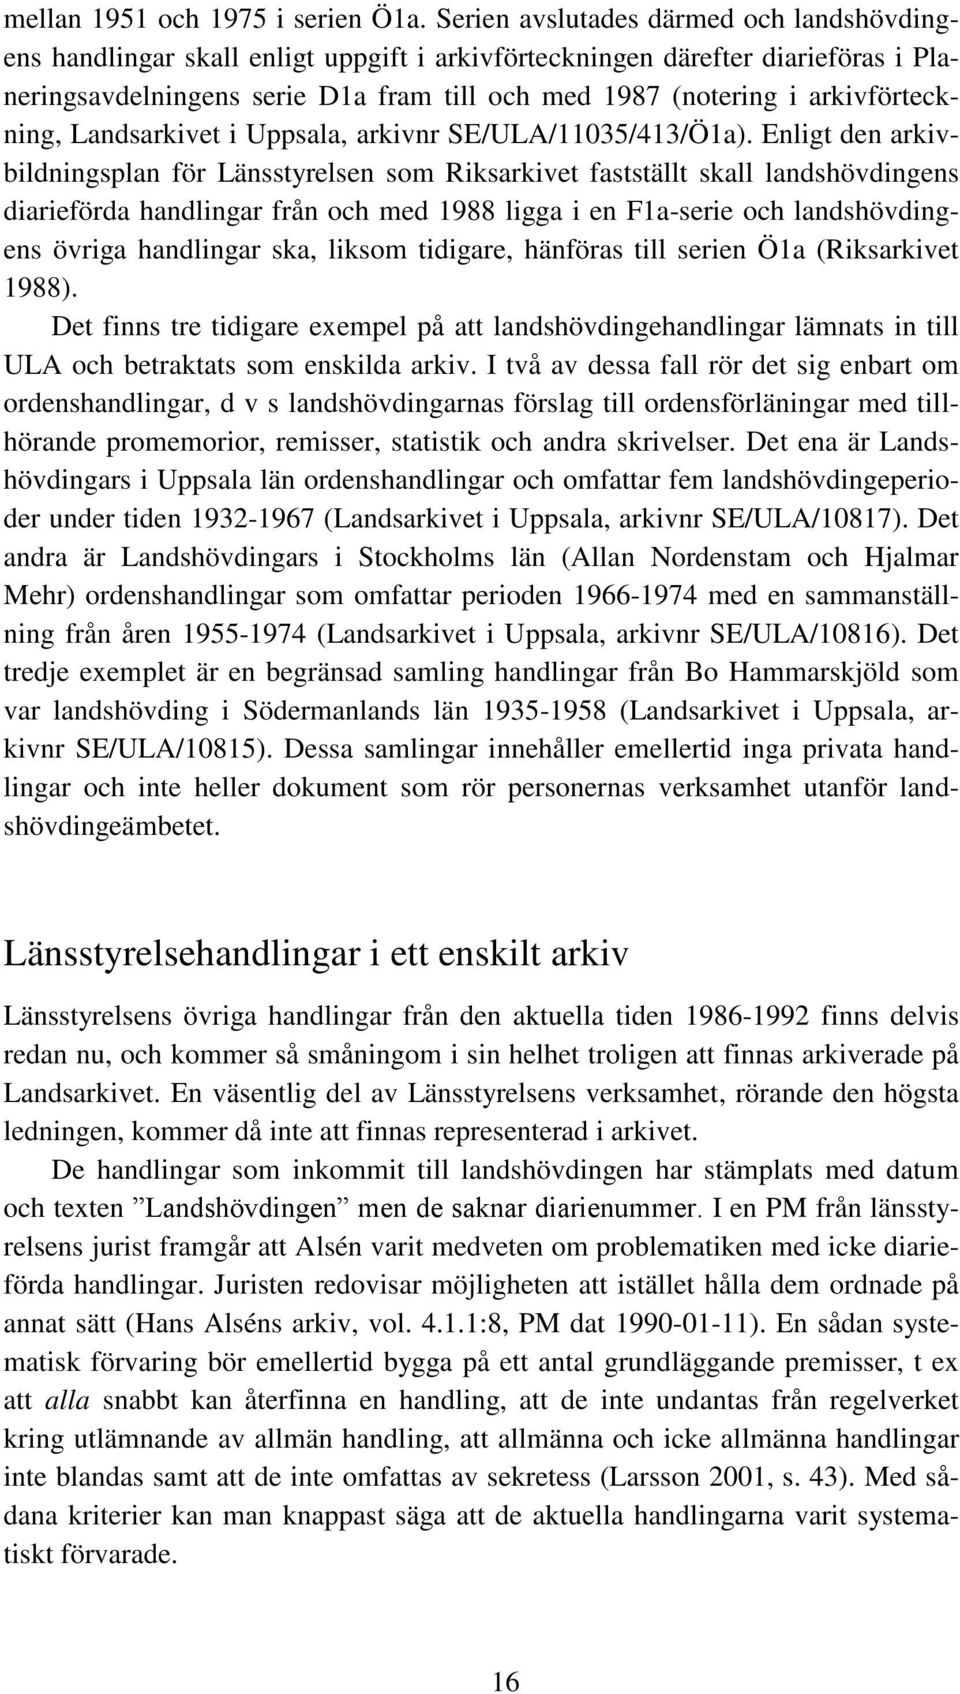 arkivförteckning, Landsarkivet i Uppsala, arkivnr SE/ULA/11035/413/Ö1a).